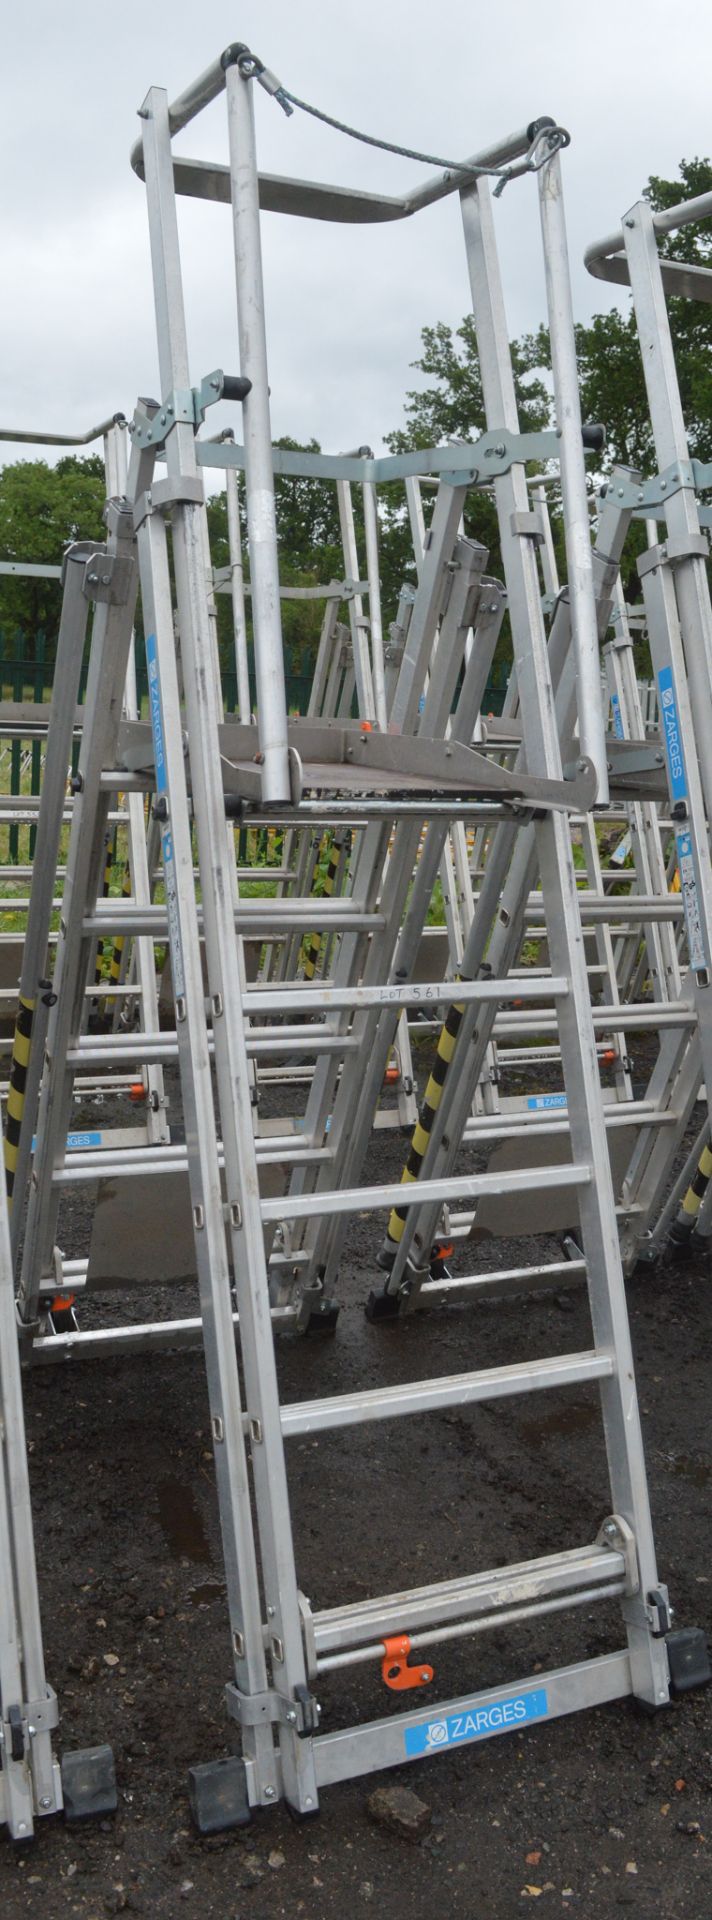 Zarges aluminium podium ladder A844592 - Image 2 of 2